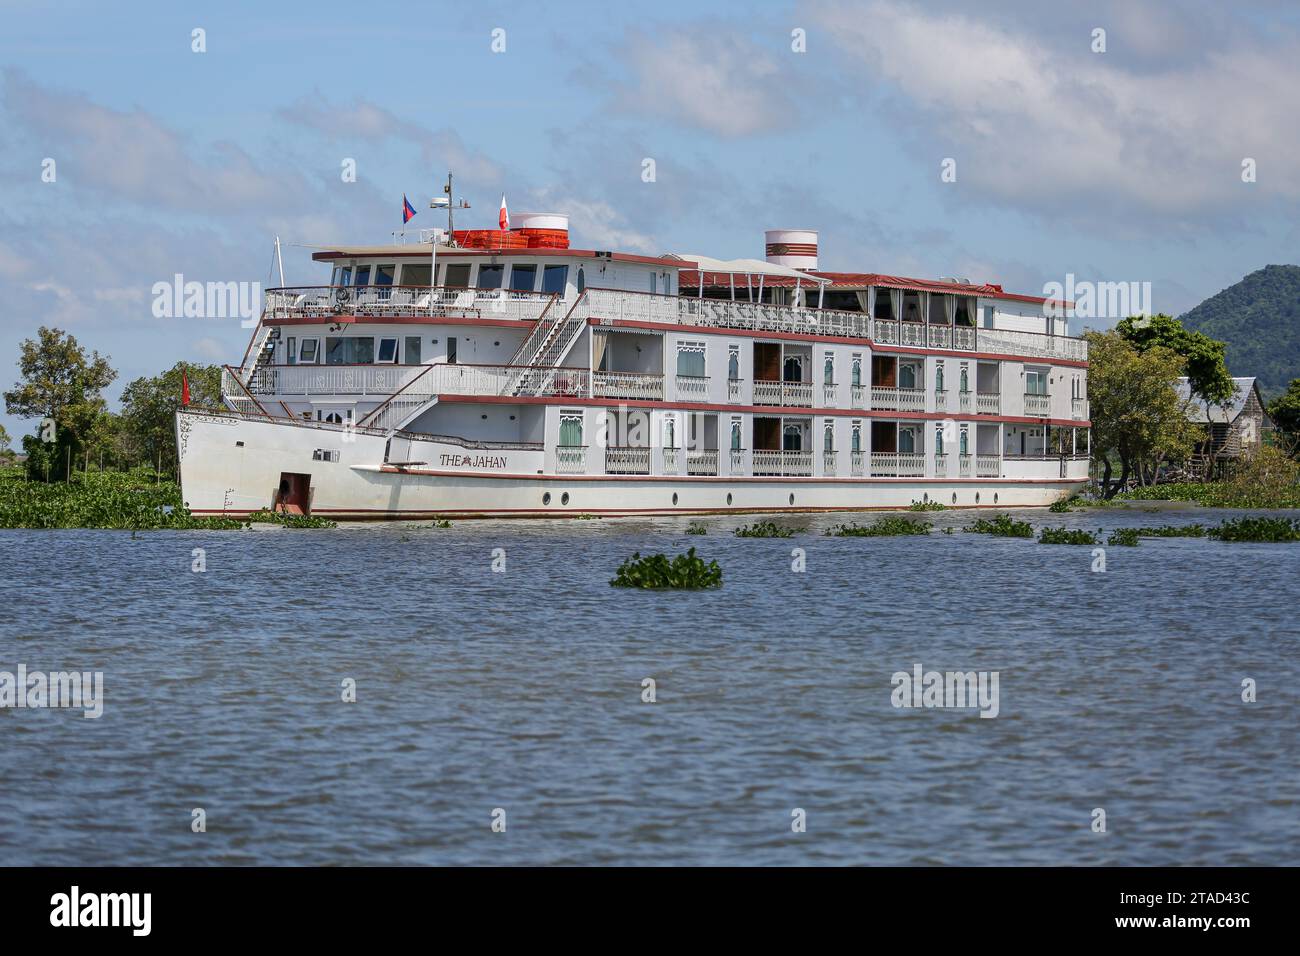 Das luxuriöse Kreuzfahrtschiff Jahan (Heritage Line), Bootsfahrten auf dem unteren Mekong, Kambodscha (Siem Reap - Tonle SAP See) und Vietnam (Saigon - Ho Chi Minh) Stockfoto